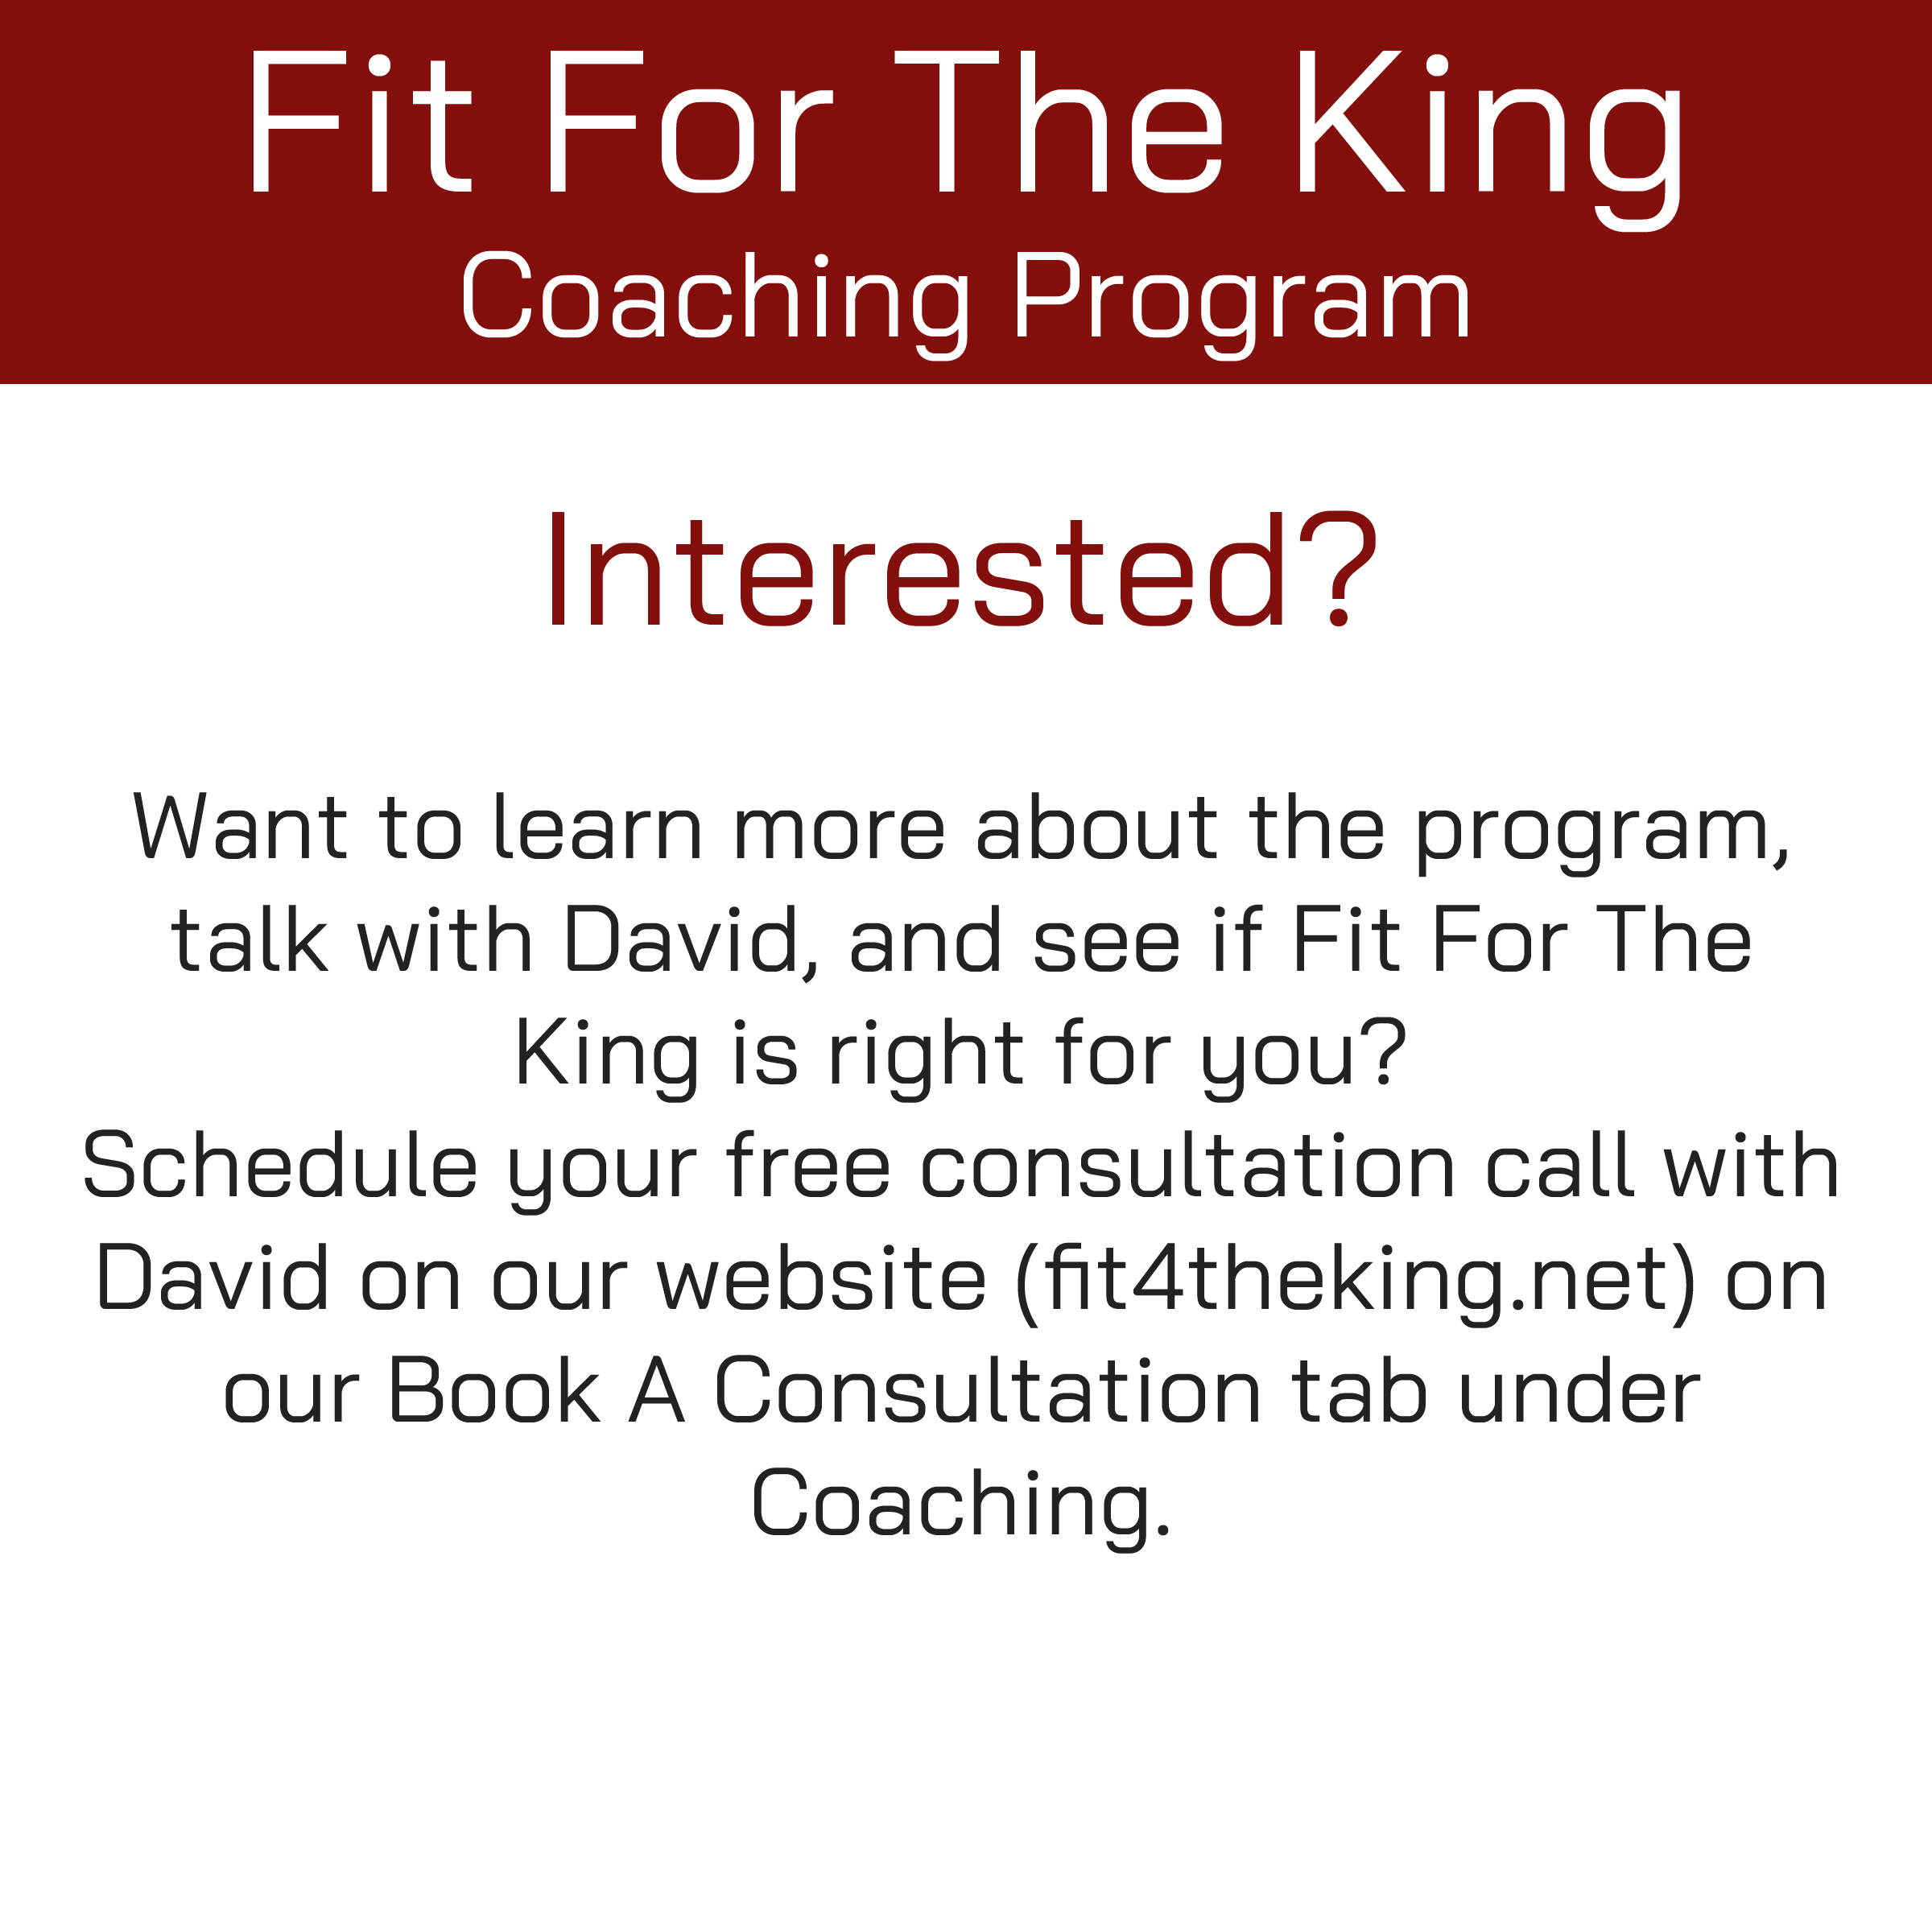 FFTK Coaching Program